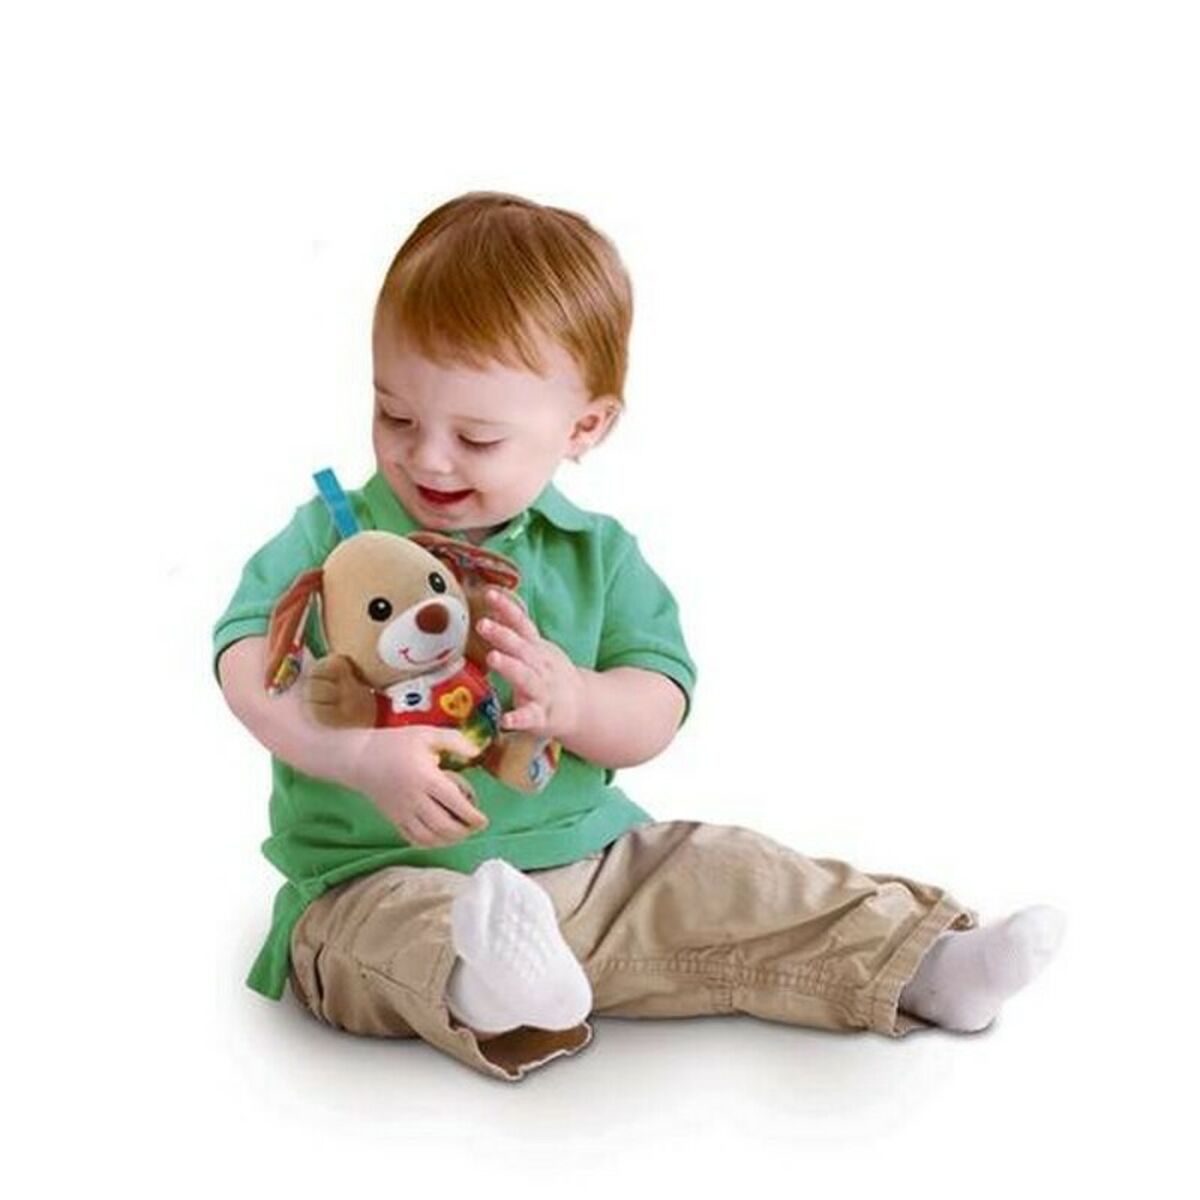 Mjuk aktivitetsleksak för bebis Vtech Multicolour (Renoverade A)-Leksaker och spel, Mjuka leksaker-Vtech-peaceofhome.se